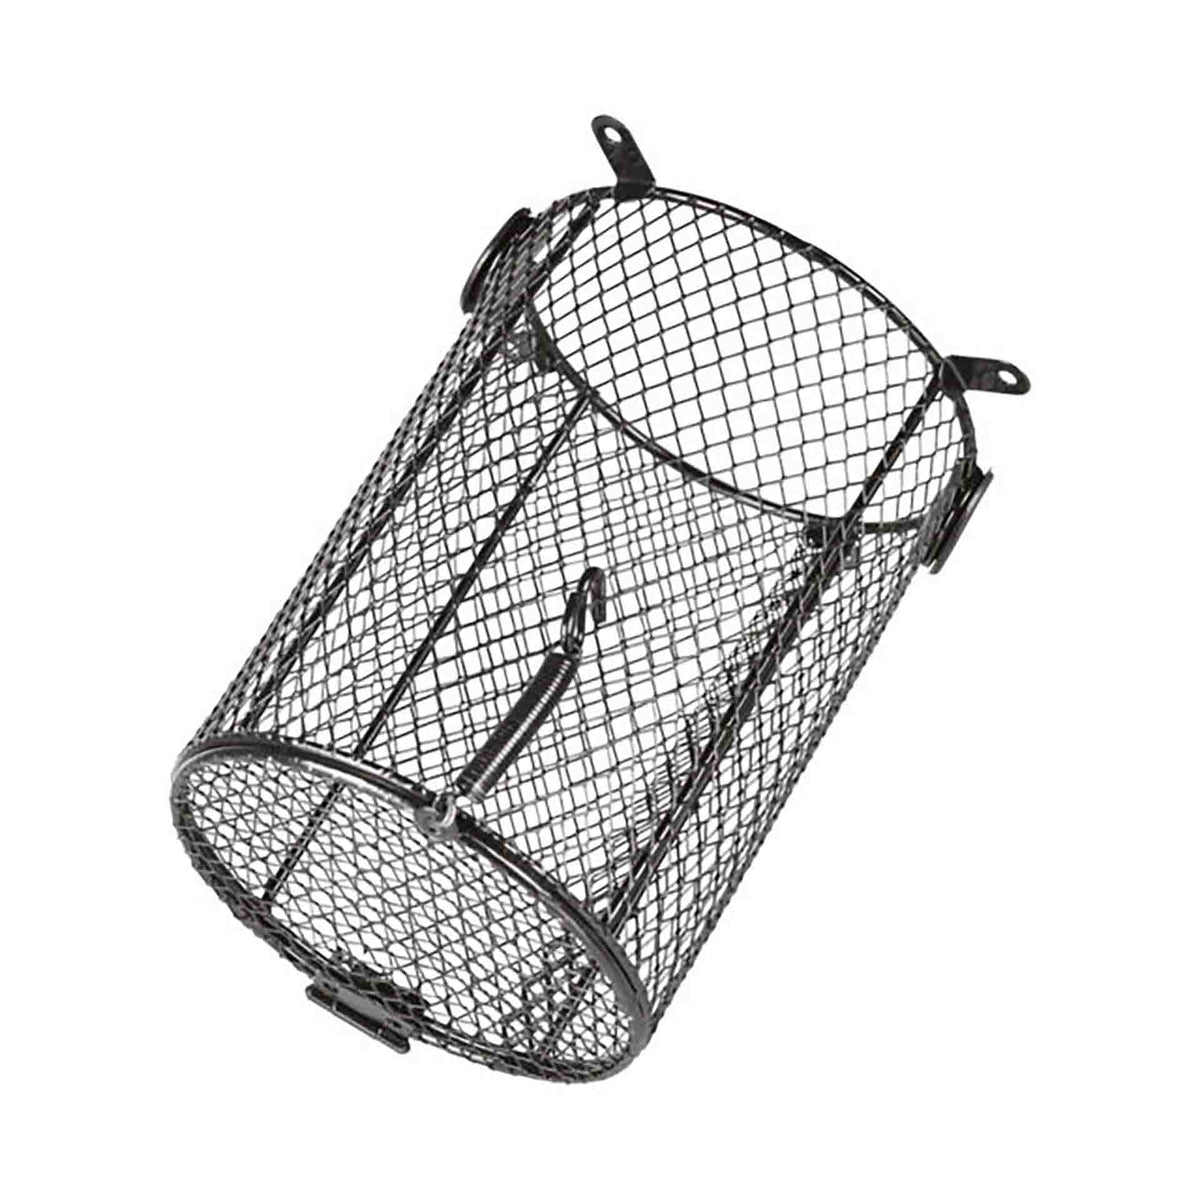 Trixie Protective Cage for Terrarium lamps - 15 x 22cm